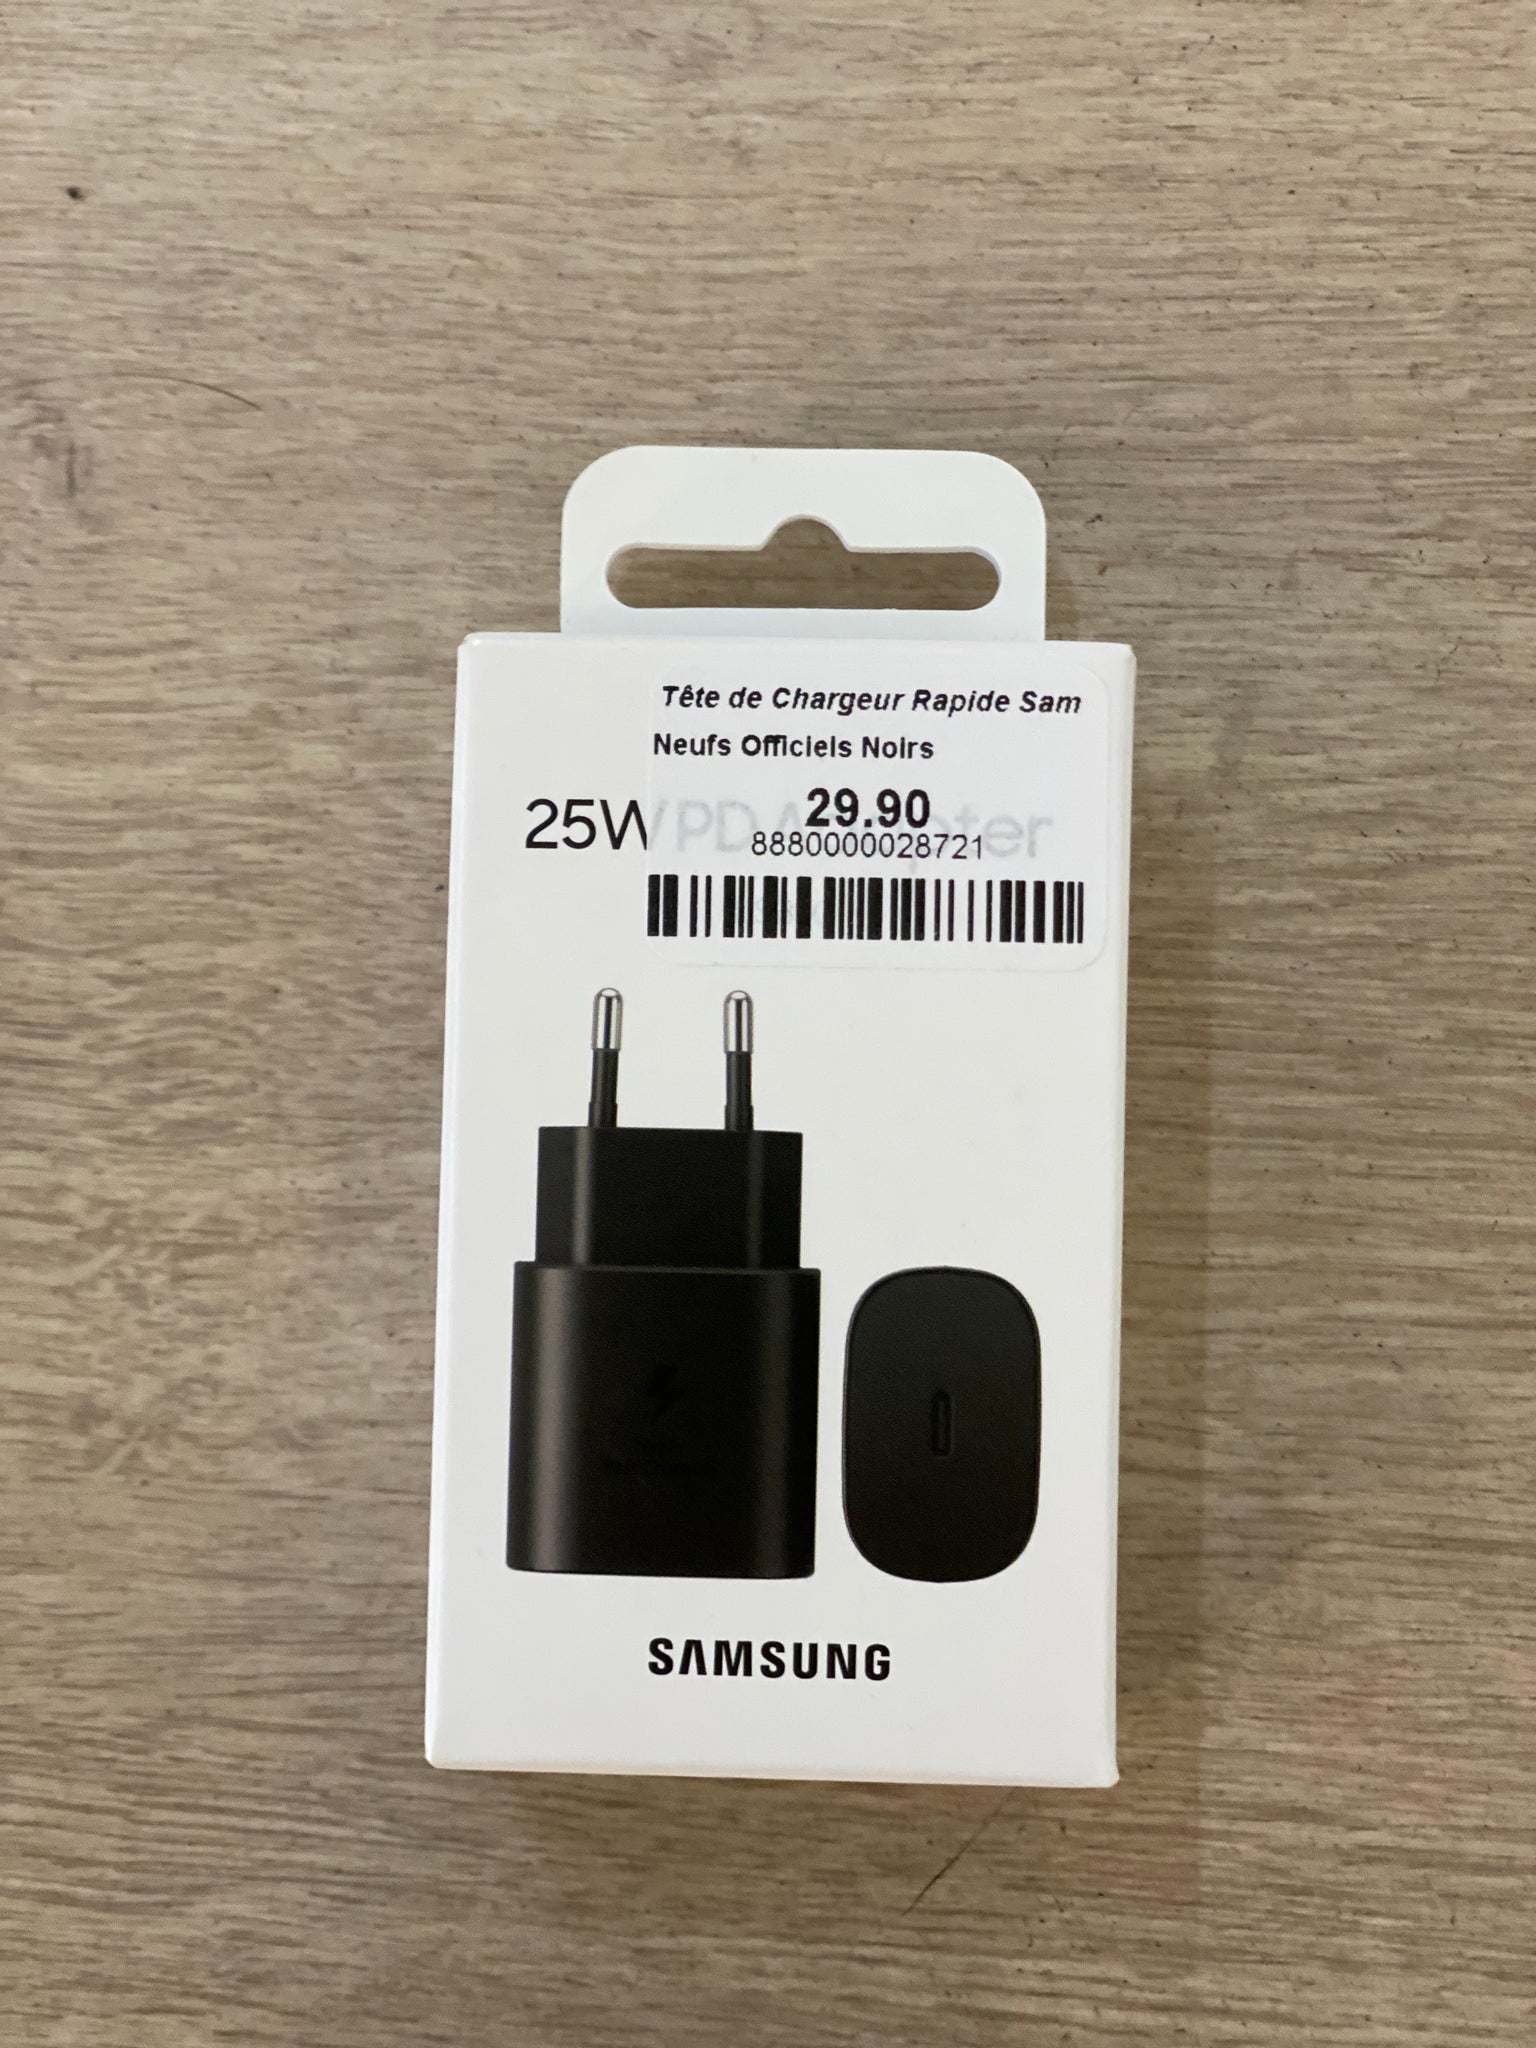 Tête de Chargeur Samsung 25W – Cashfive - Acheter en toute